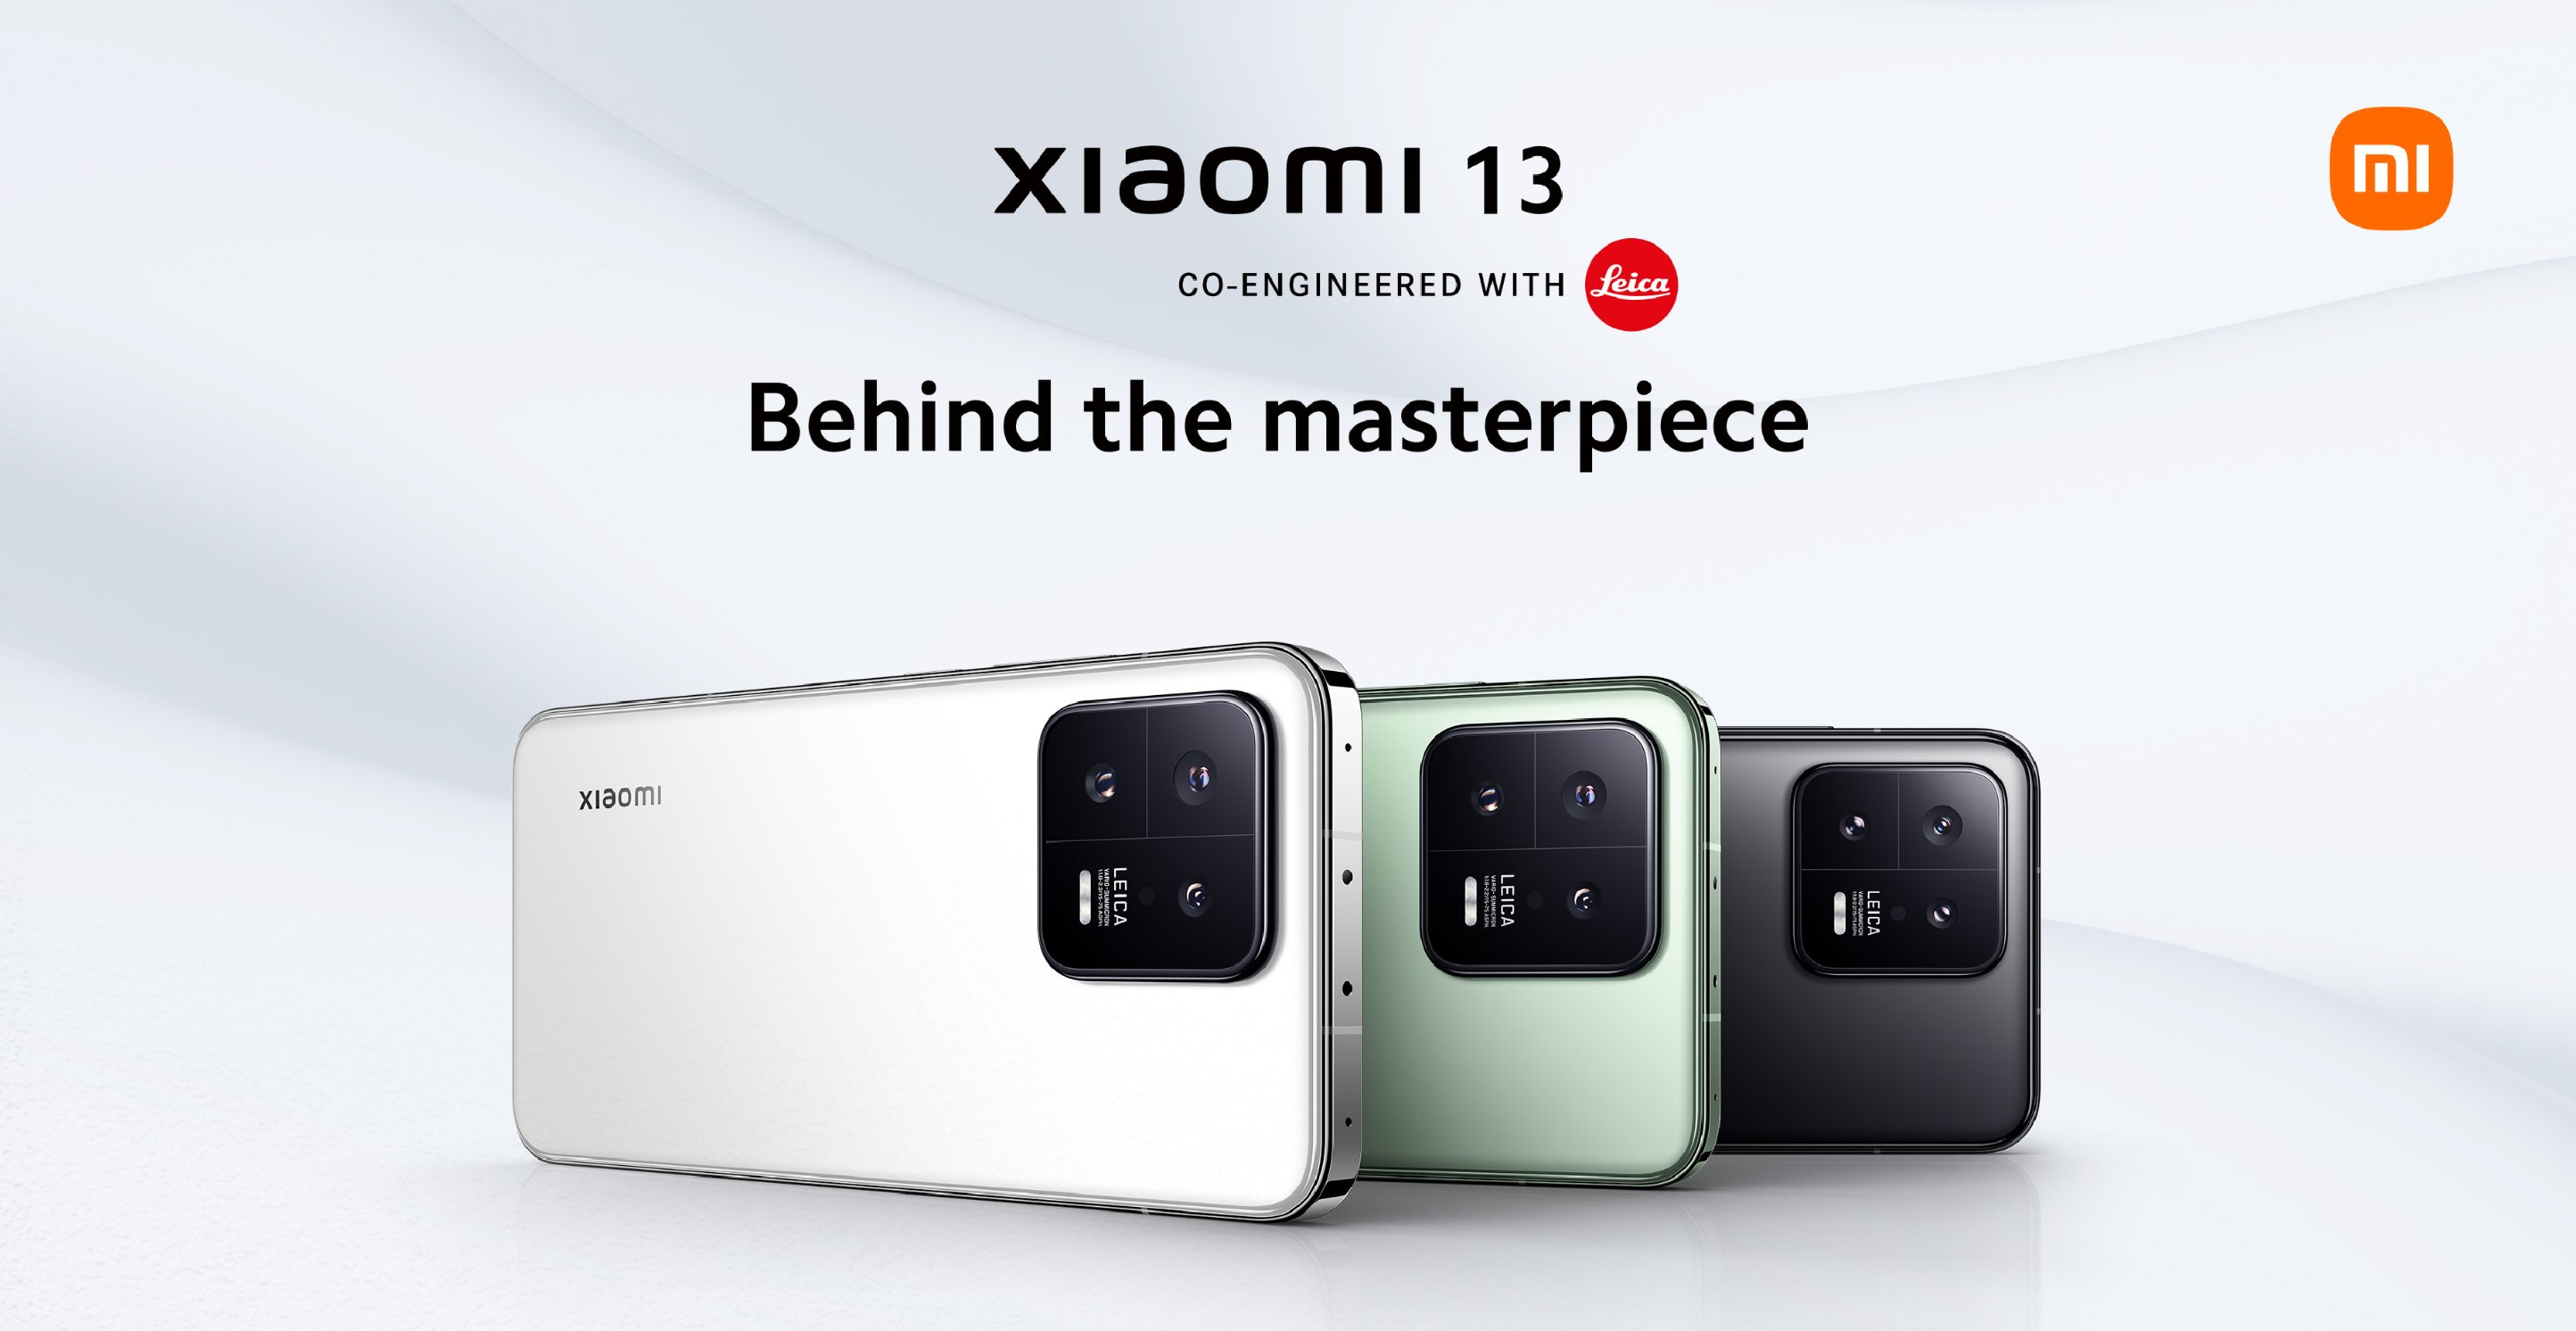 Le Xiaomi 13 est lancé en Europe - Snapdragon 8 Gen 2, IP68, écran 120Hz et support 8K UHD à partir de 999€.